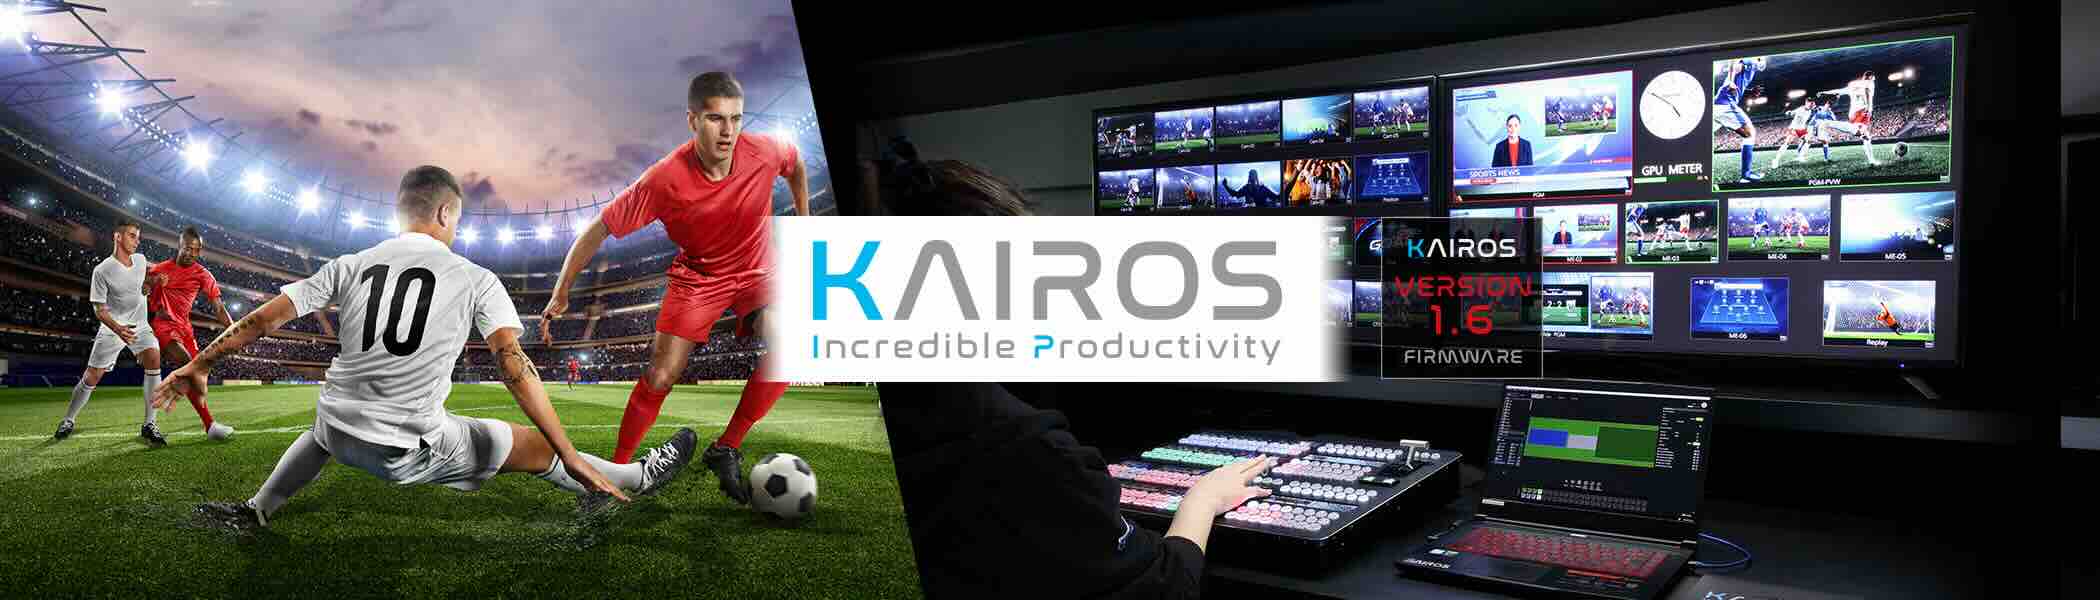 KAIROS Incredible Productivity E 2100x600